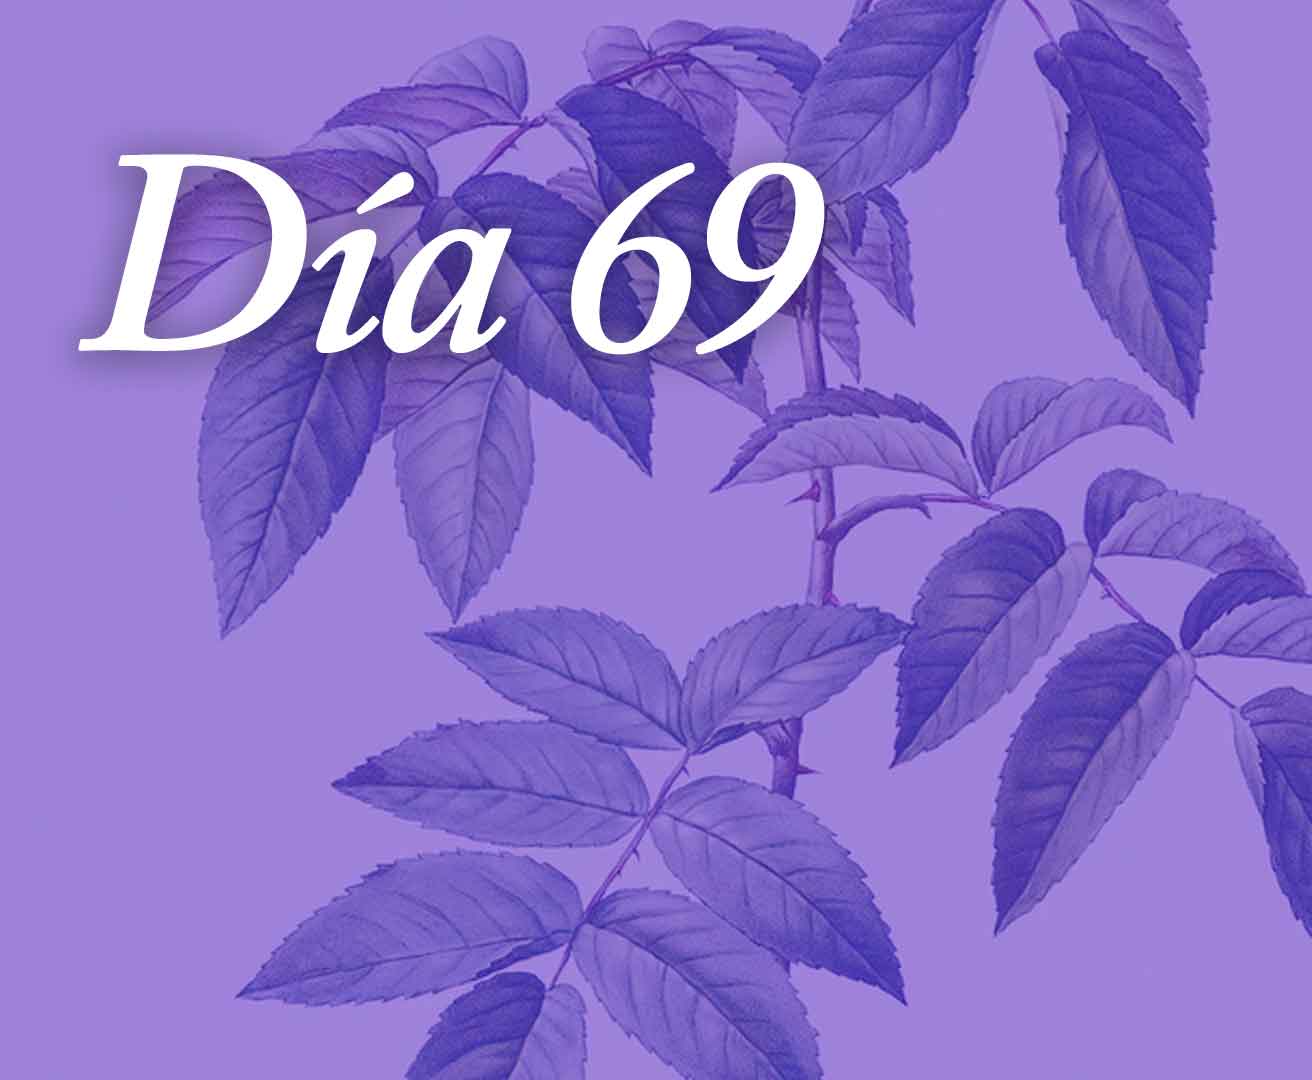 Día 69 - Somos comunidad